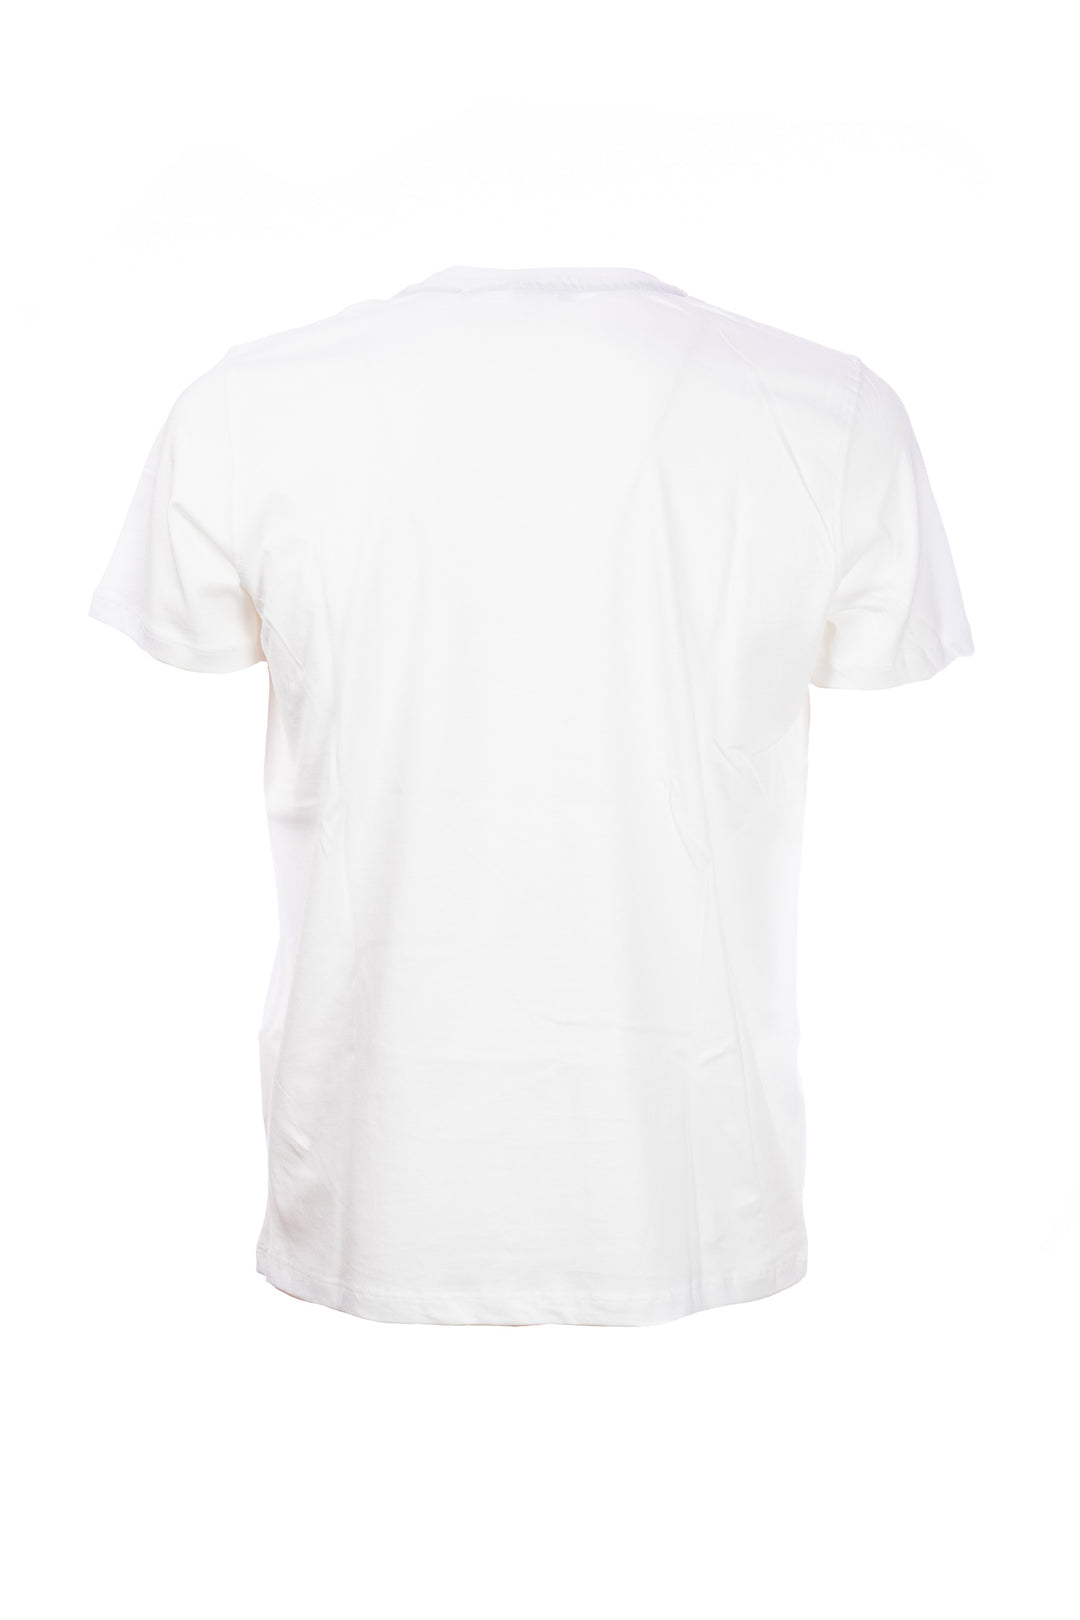 U.S. POLO ASSN. T-shirt bianca in cotone con logo ricamato sul petto - Mancinelli 1954